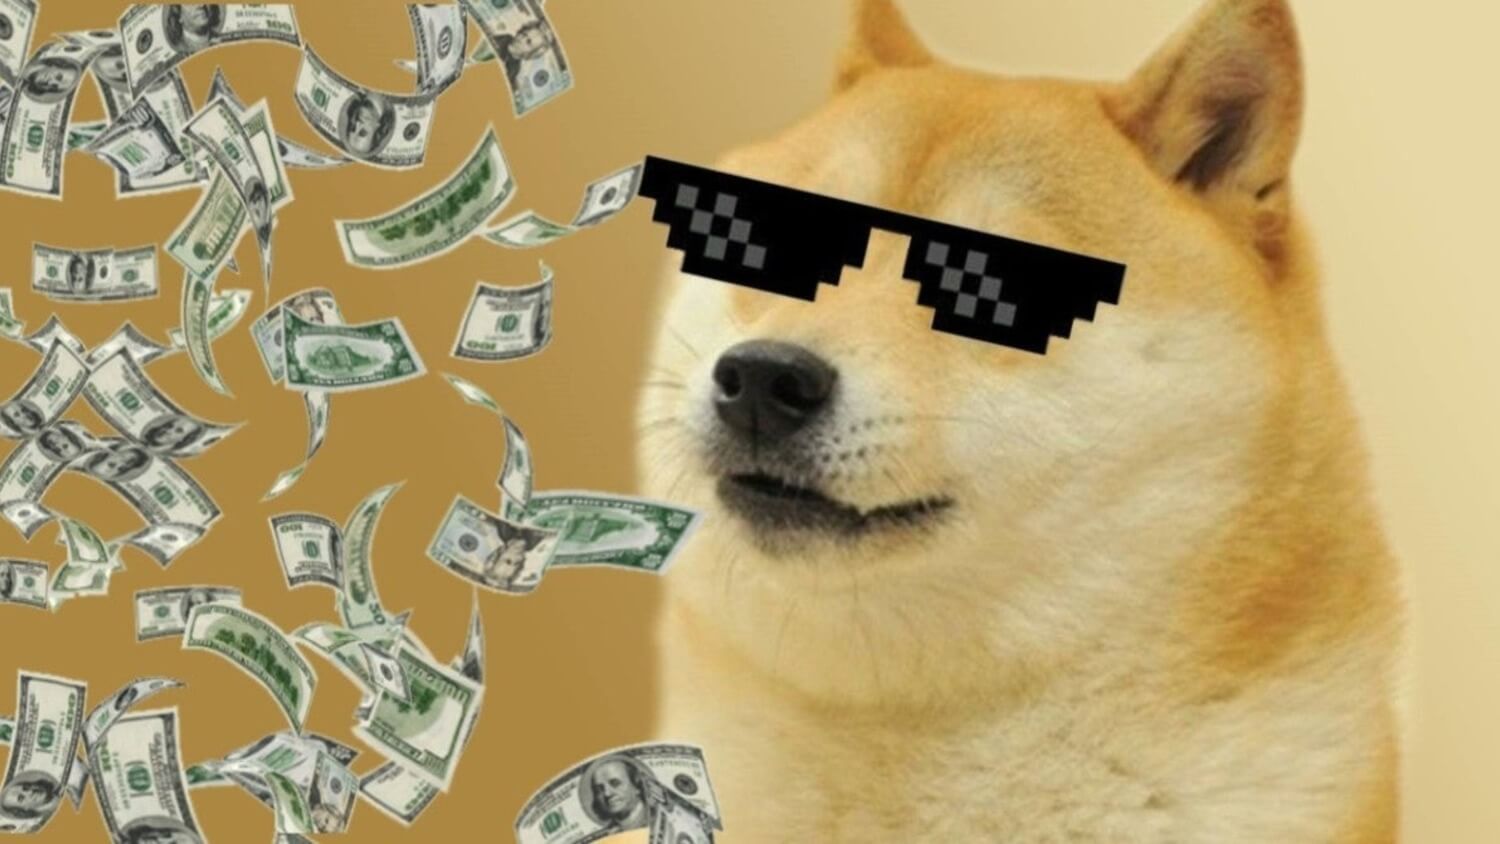 Темпы создания новых криптовалют упали до минимума за три года. О чём это говорит? Мем с участием криптовалюты Dogecoin. Фото.